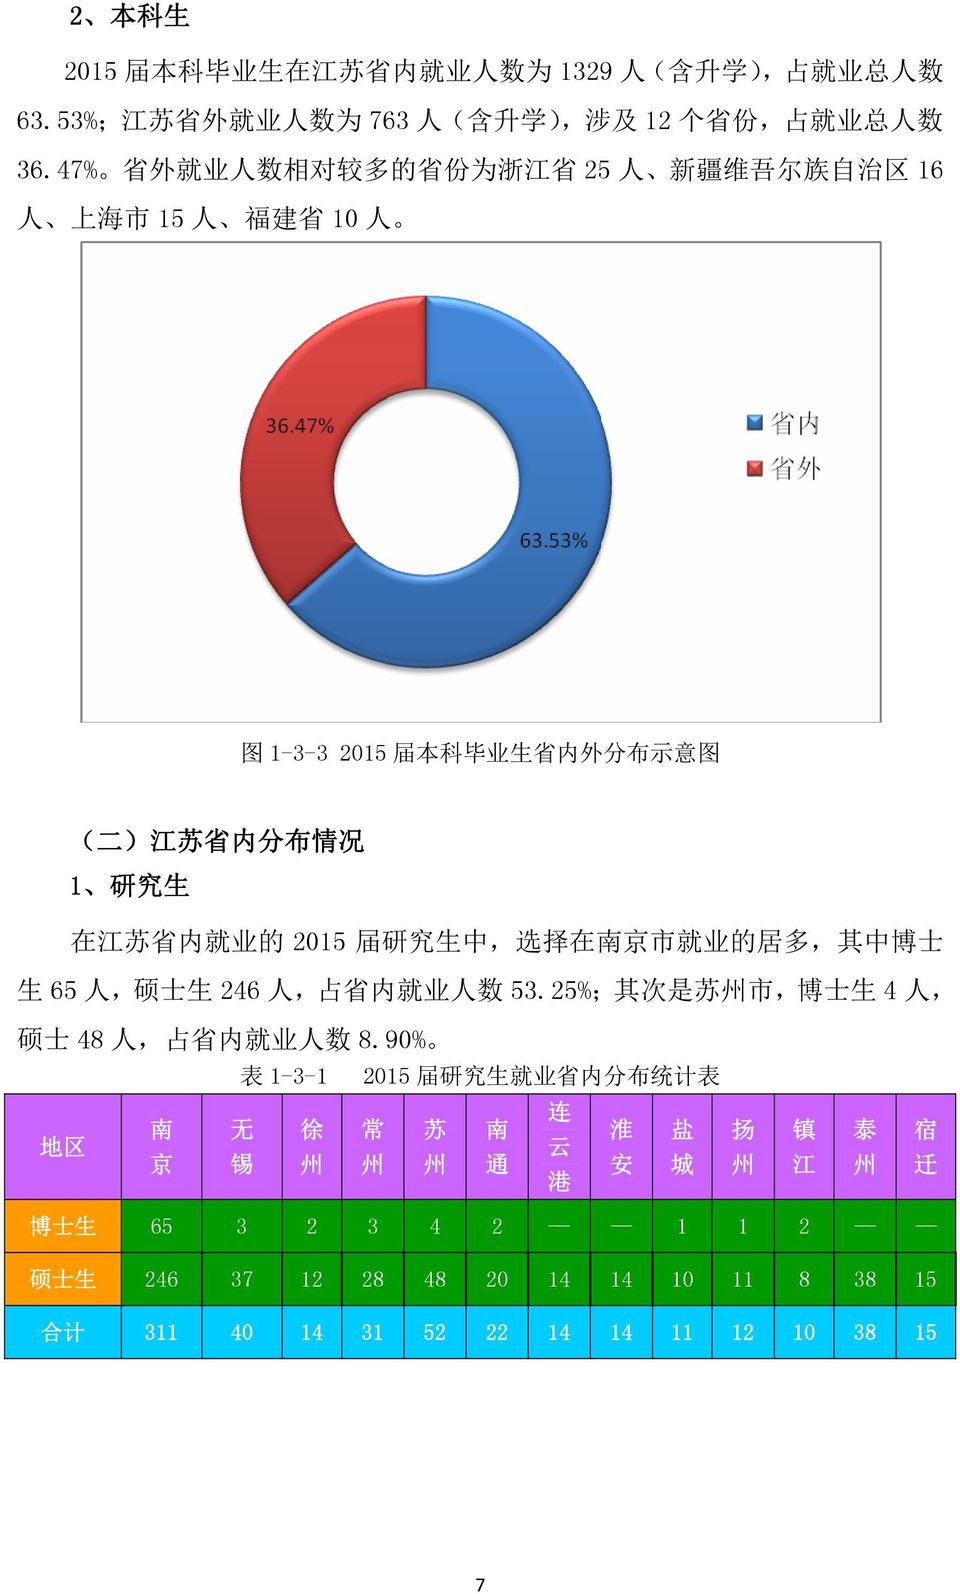 就 业 的 2015 届 研 究 生 中, 选 择 在 南 京 市 就 业 的 居 多, 其 中 博 士 生 65 人, 硕 士 生 246 人, 占 省 内 就 业 人 数 53.25%; 其 次 是 苏 州 市, 博 士 生 4 人, 硕 士 48 人, 占 省 内 就 业 人 数 8.